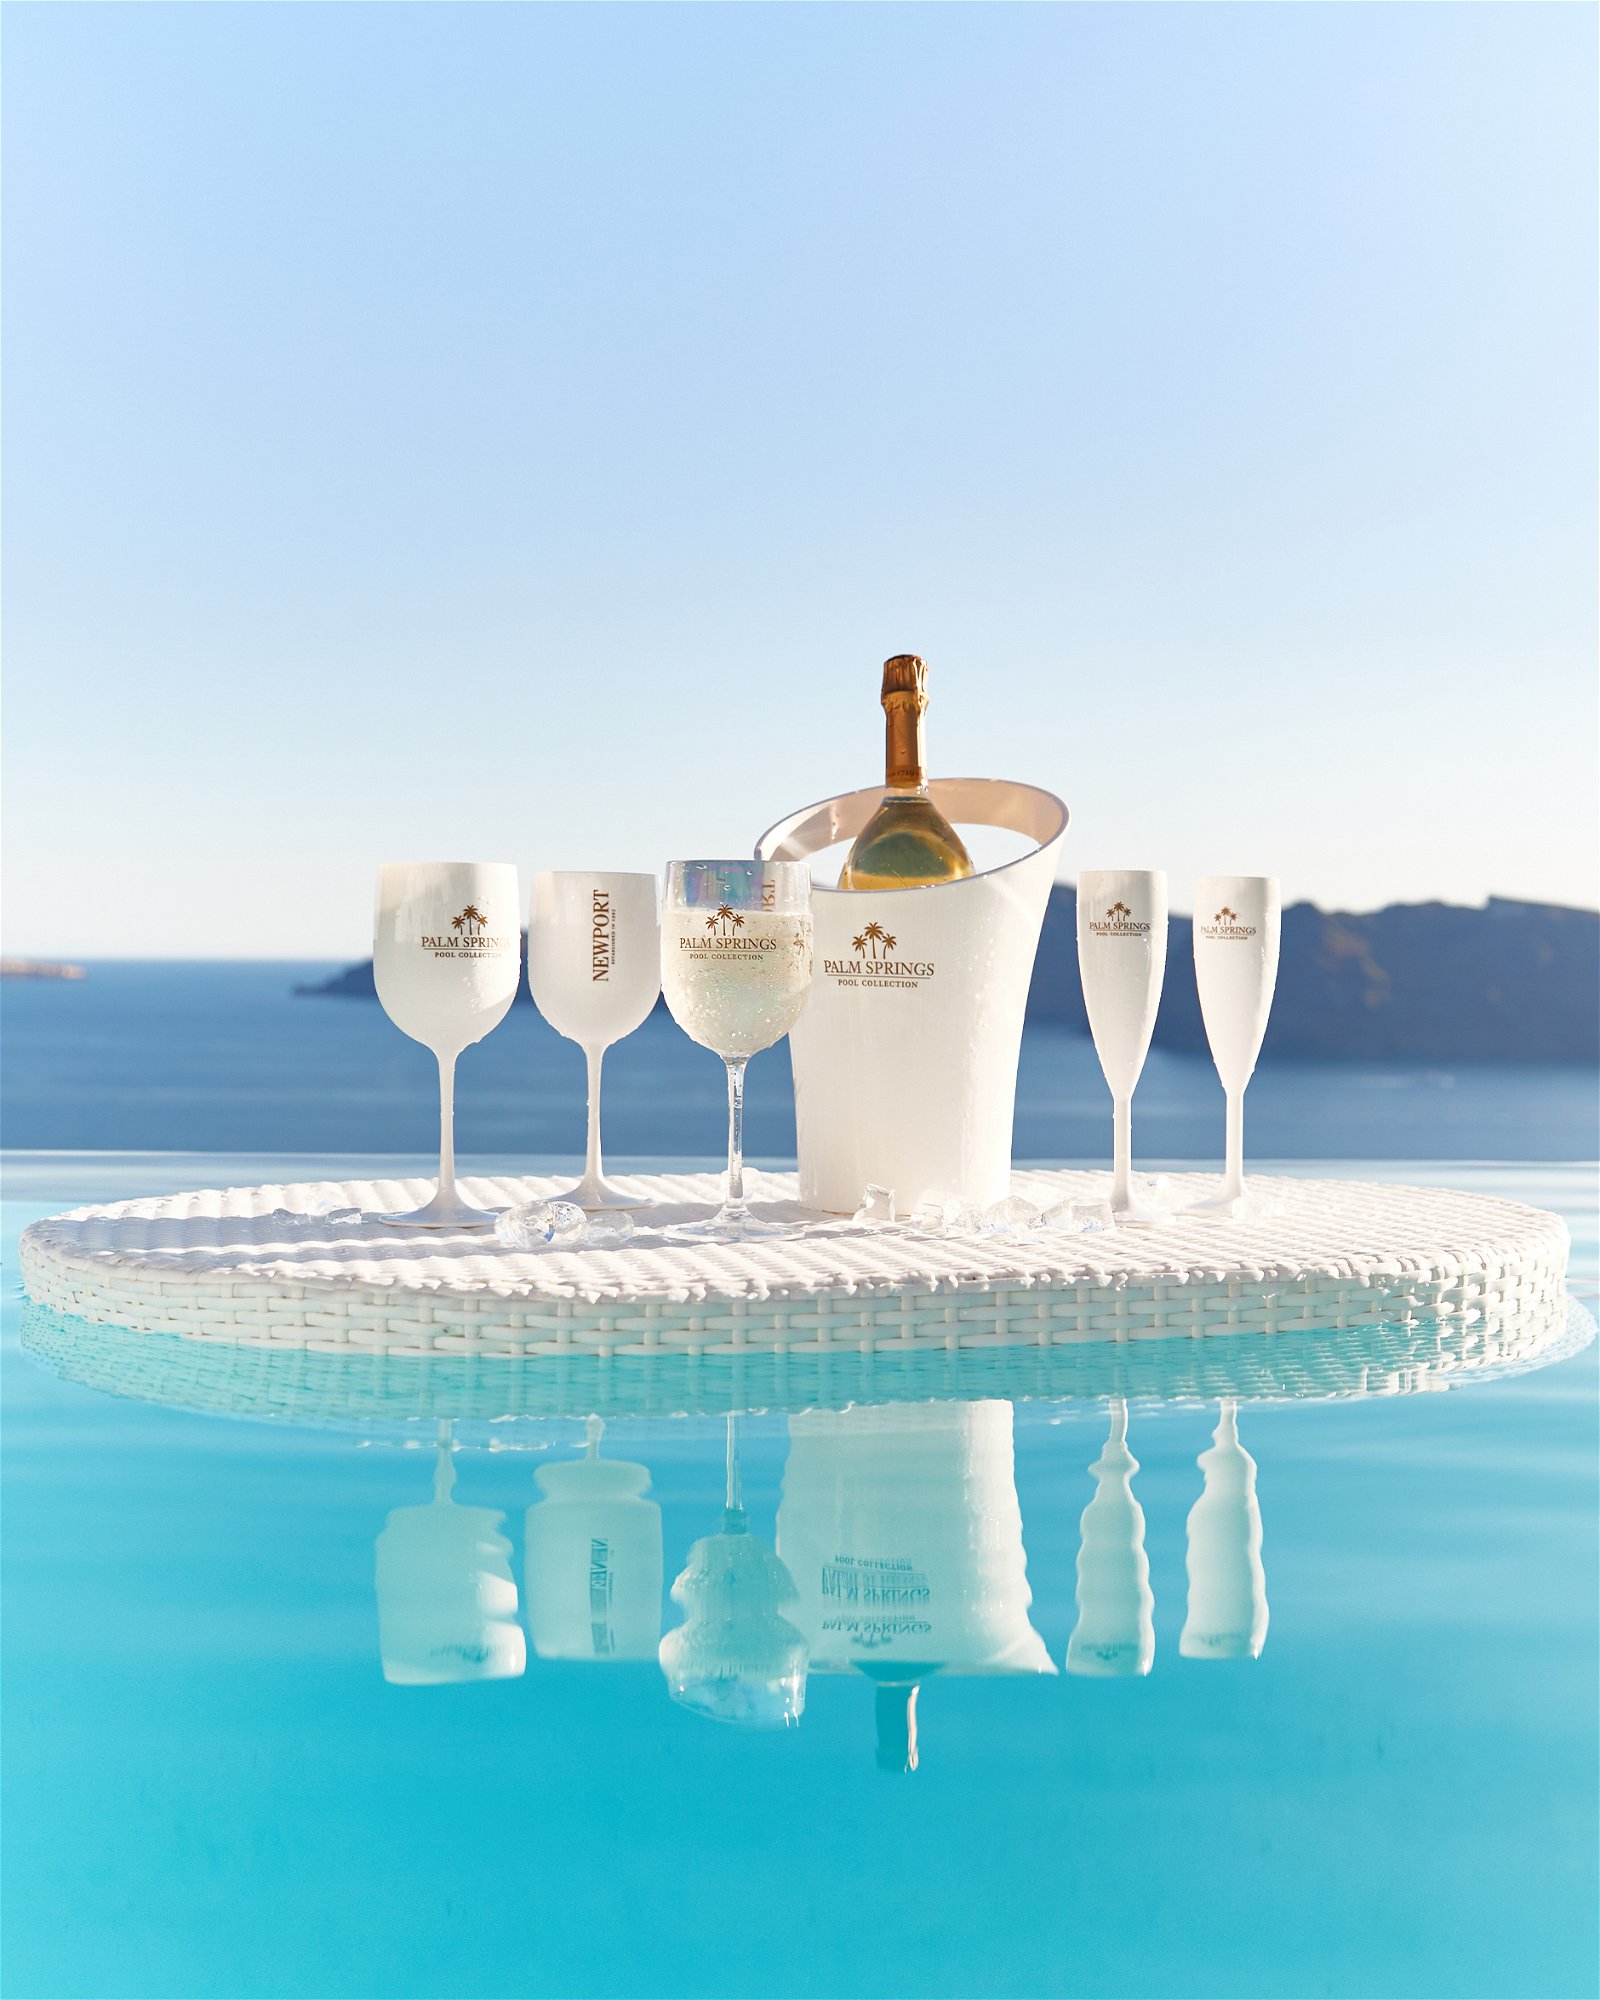 Champagne Glass White 4 pcs - Newport